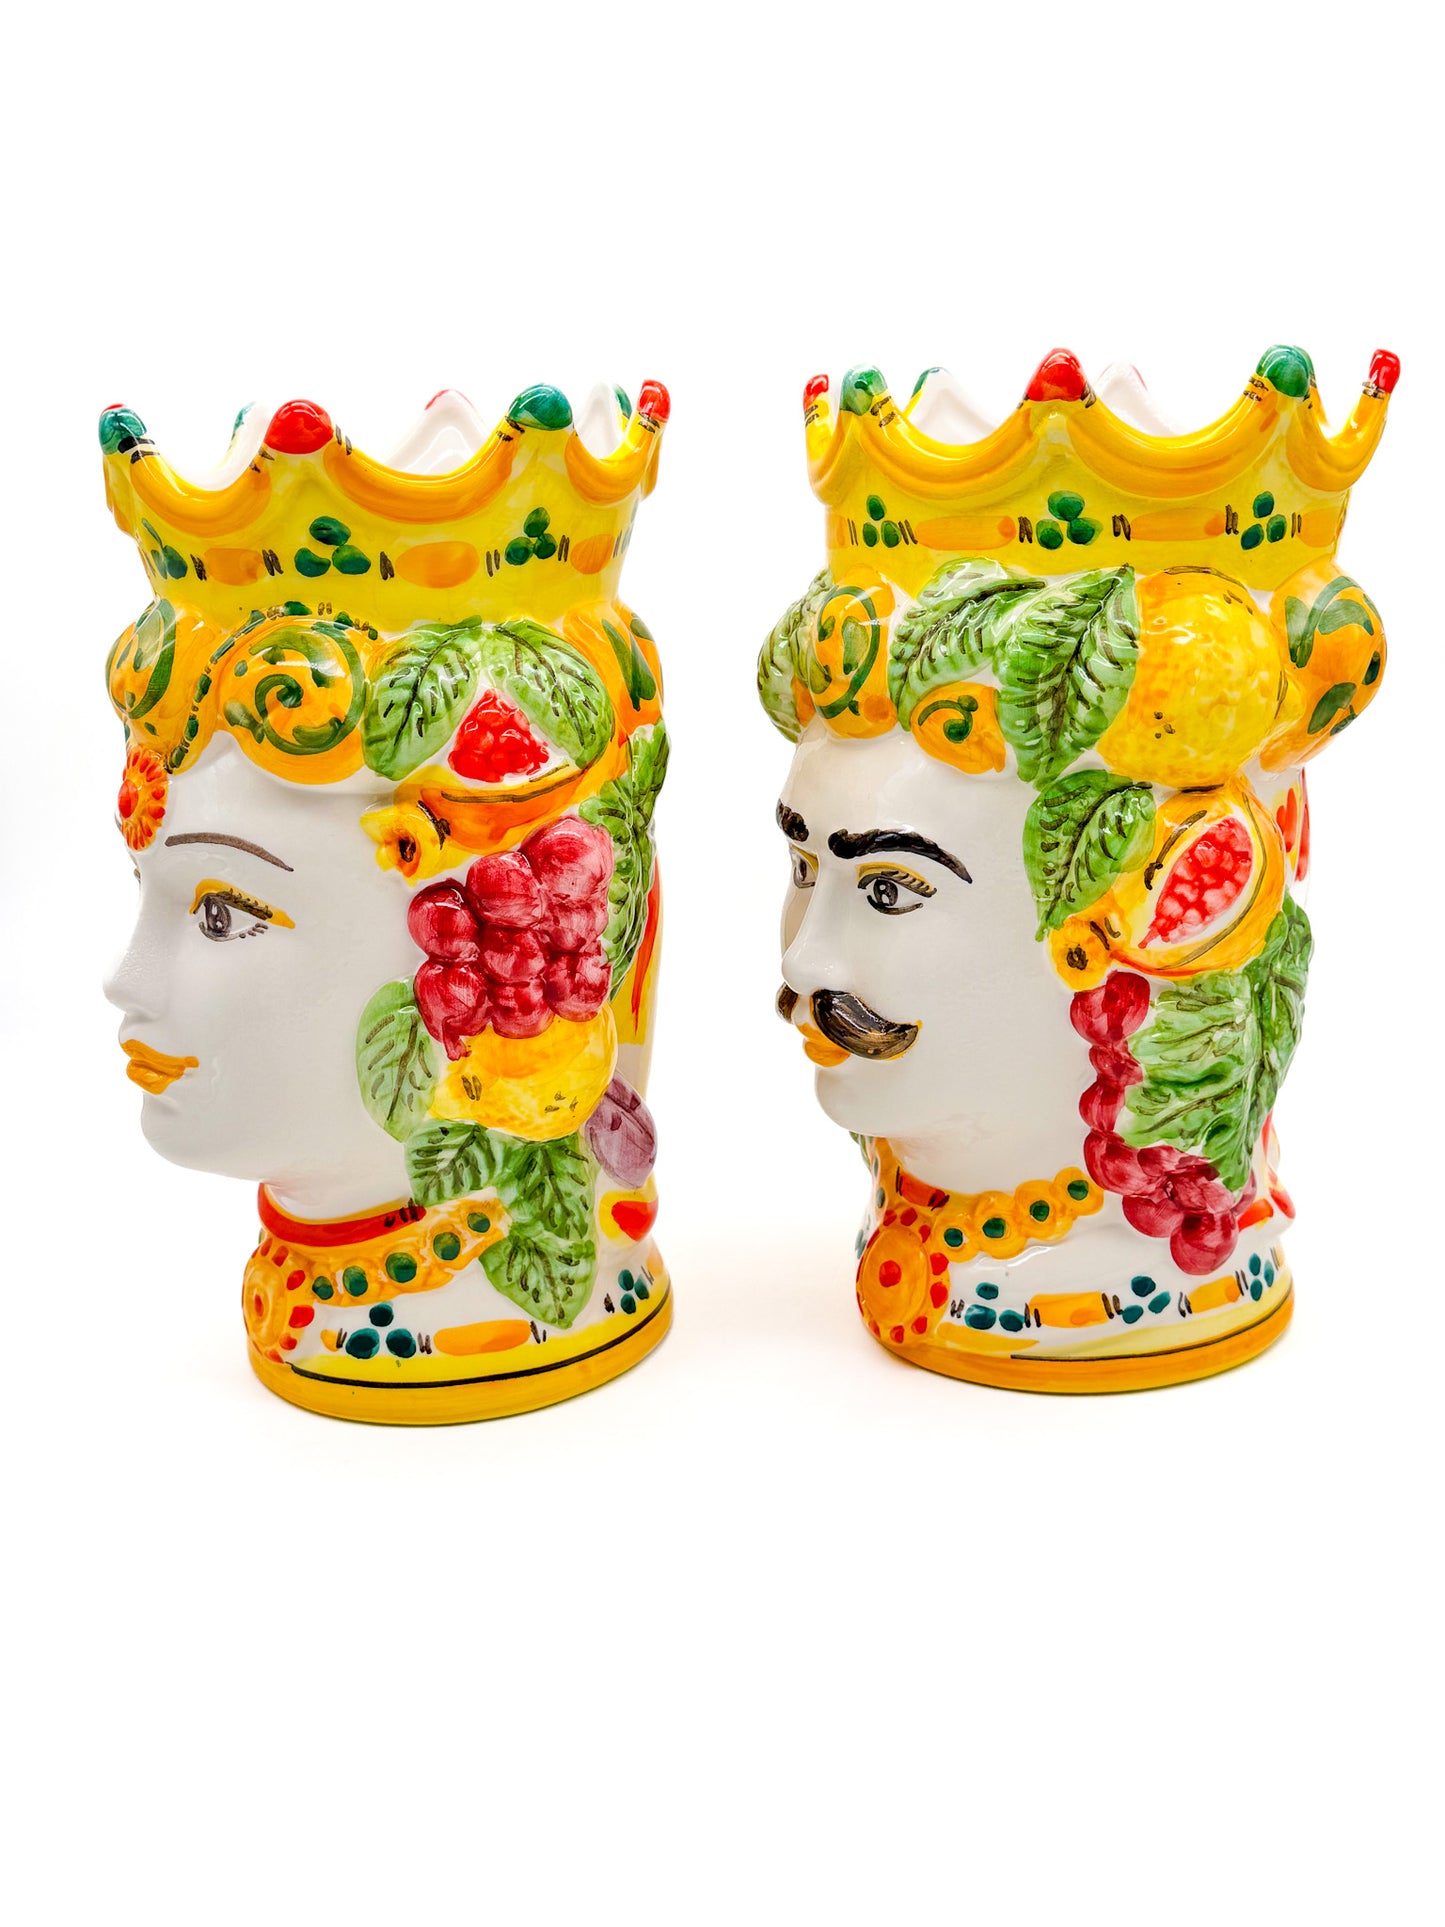 Pareja de cabezas de reyes sicilianos (25x20)